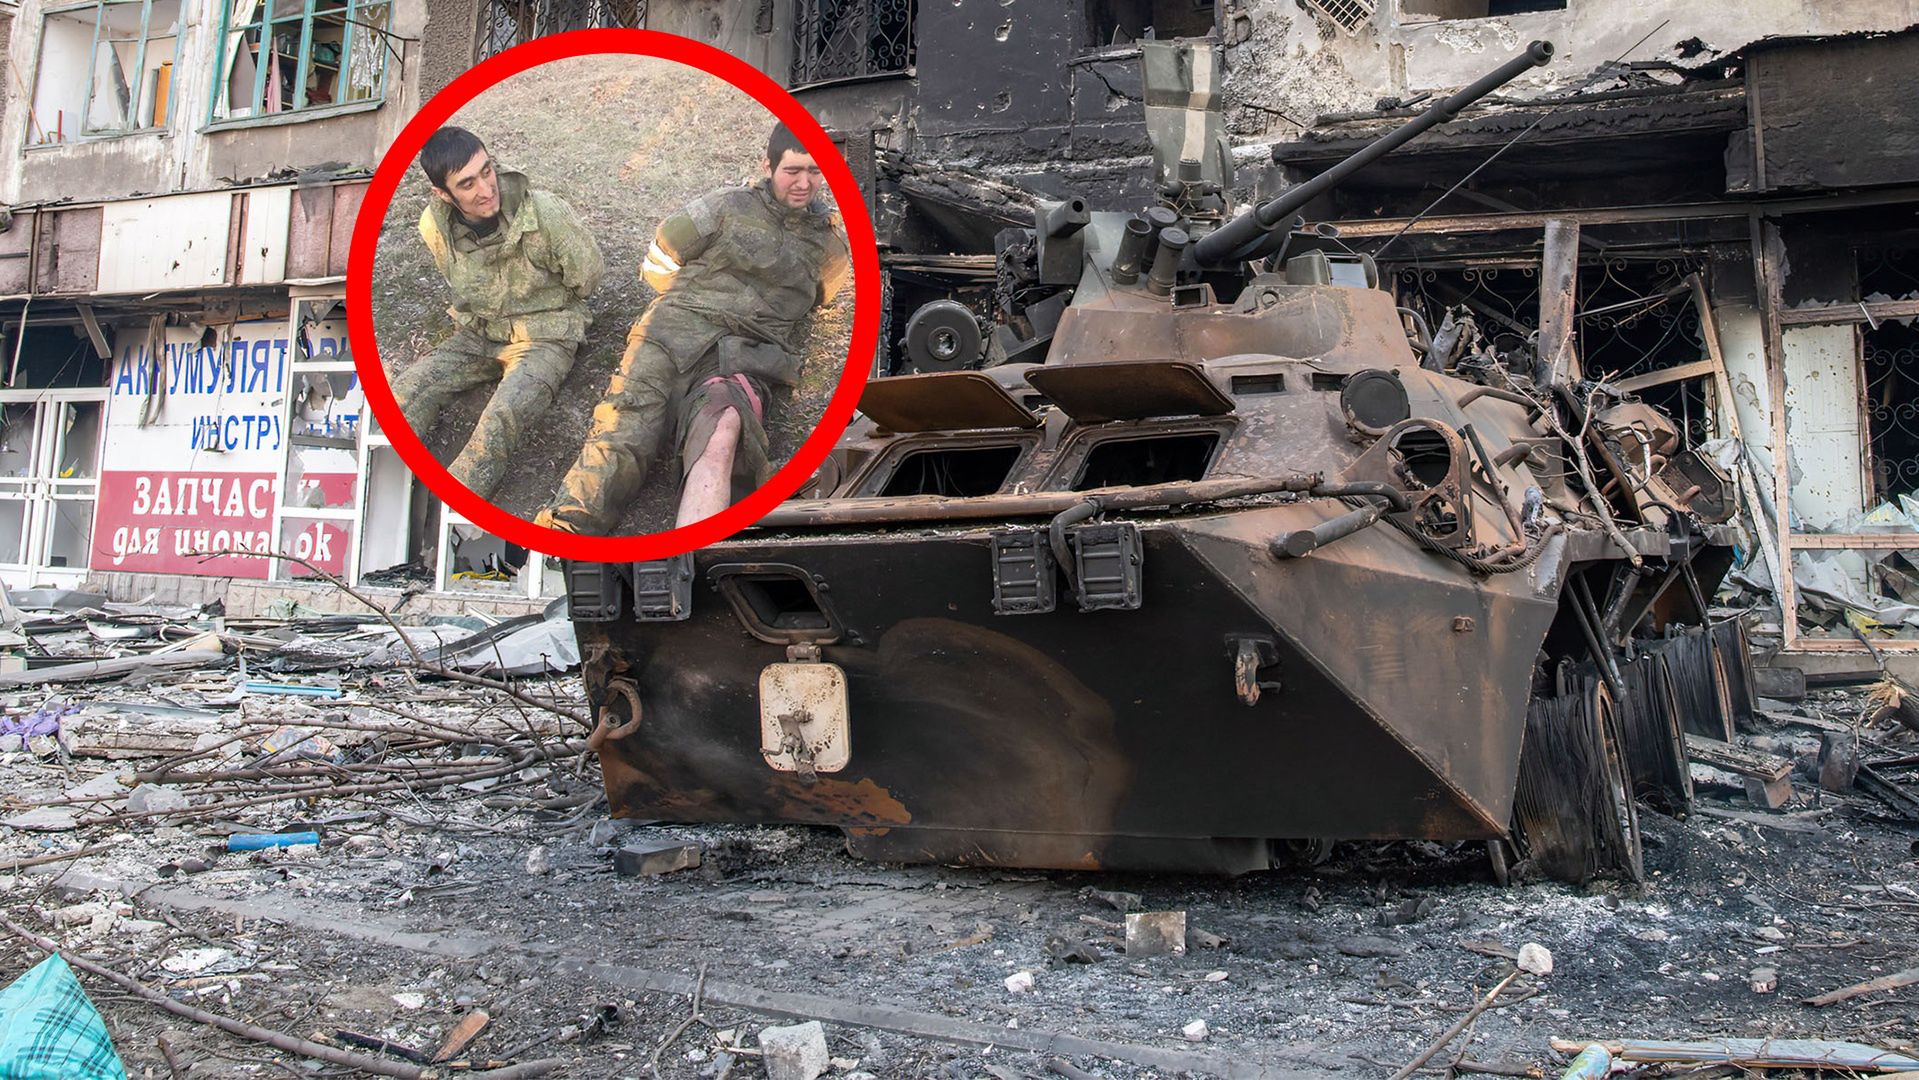 W kółku rosyjscy żołnierze schwytani przez ukraińską armię. W tle zniszczony pojazd wojskowy na ulicy oblężonego Mariupola